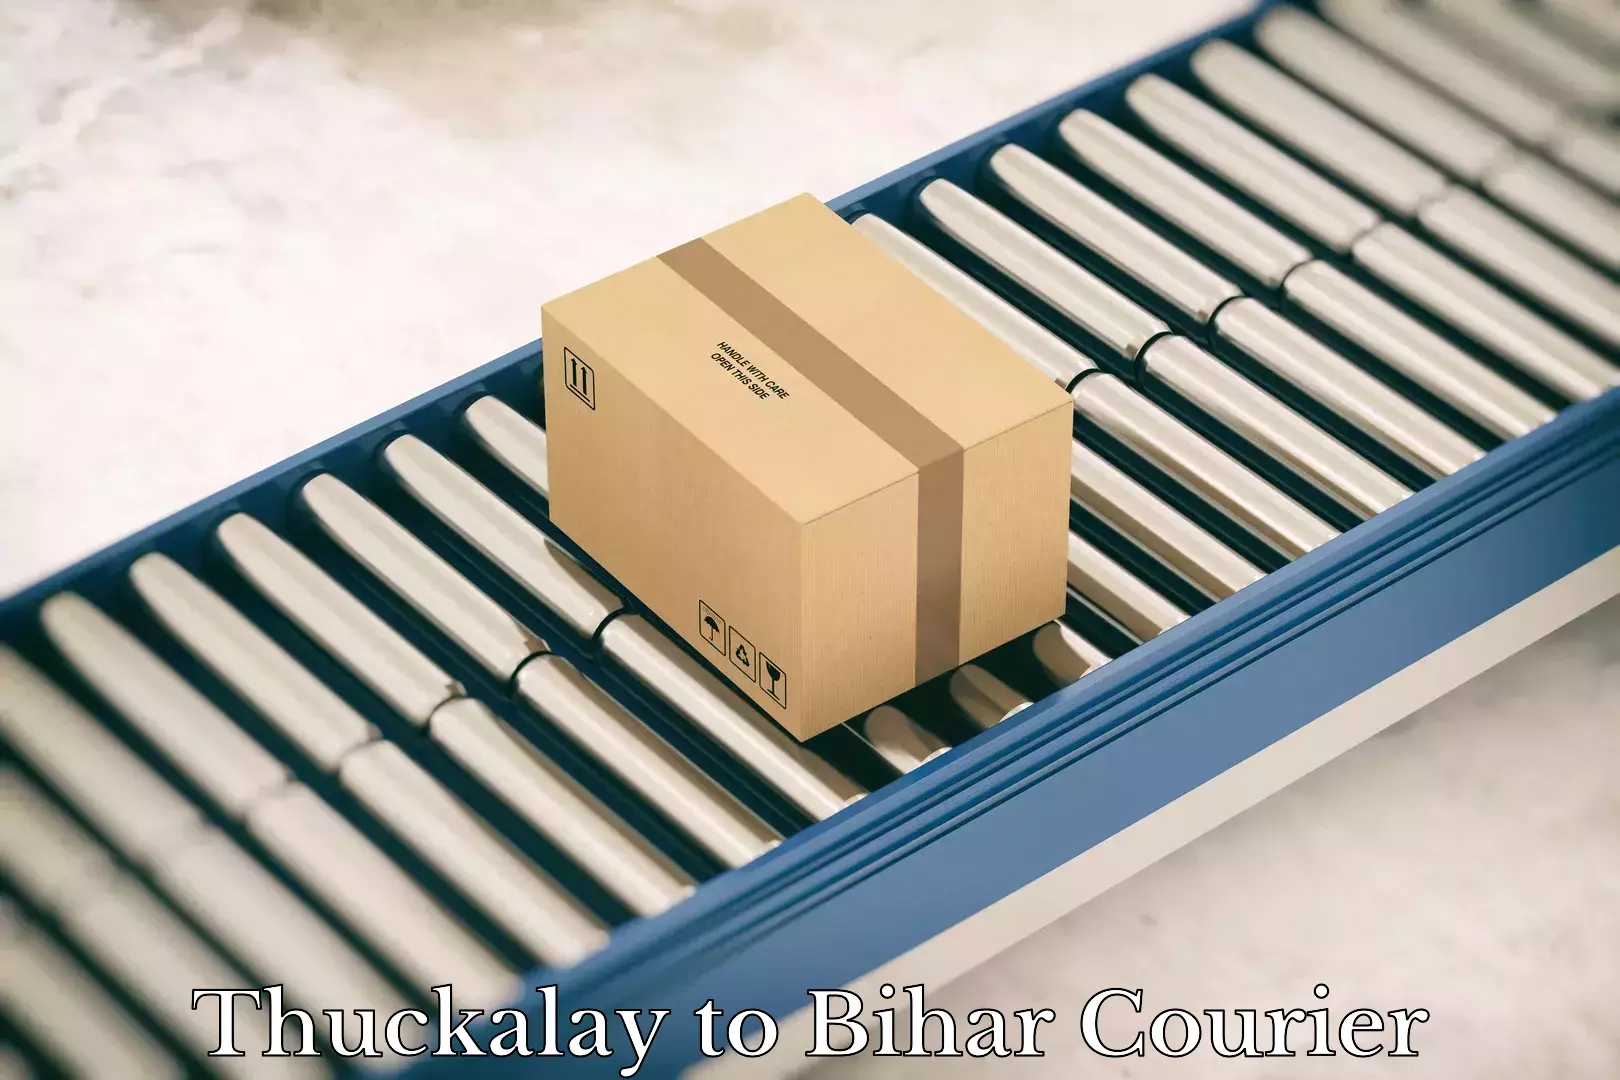 Discounted shipping Thuckalay to Bihar